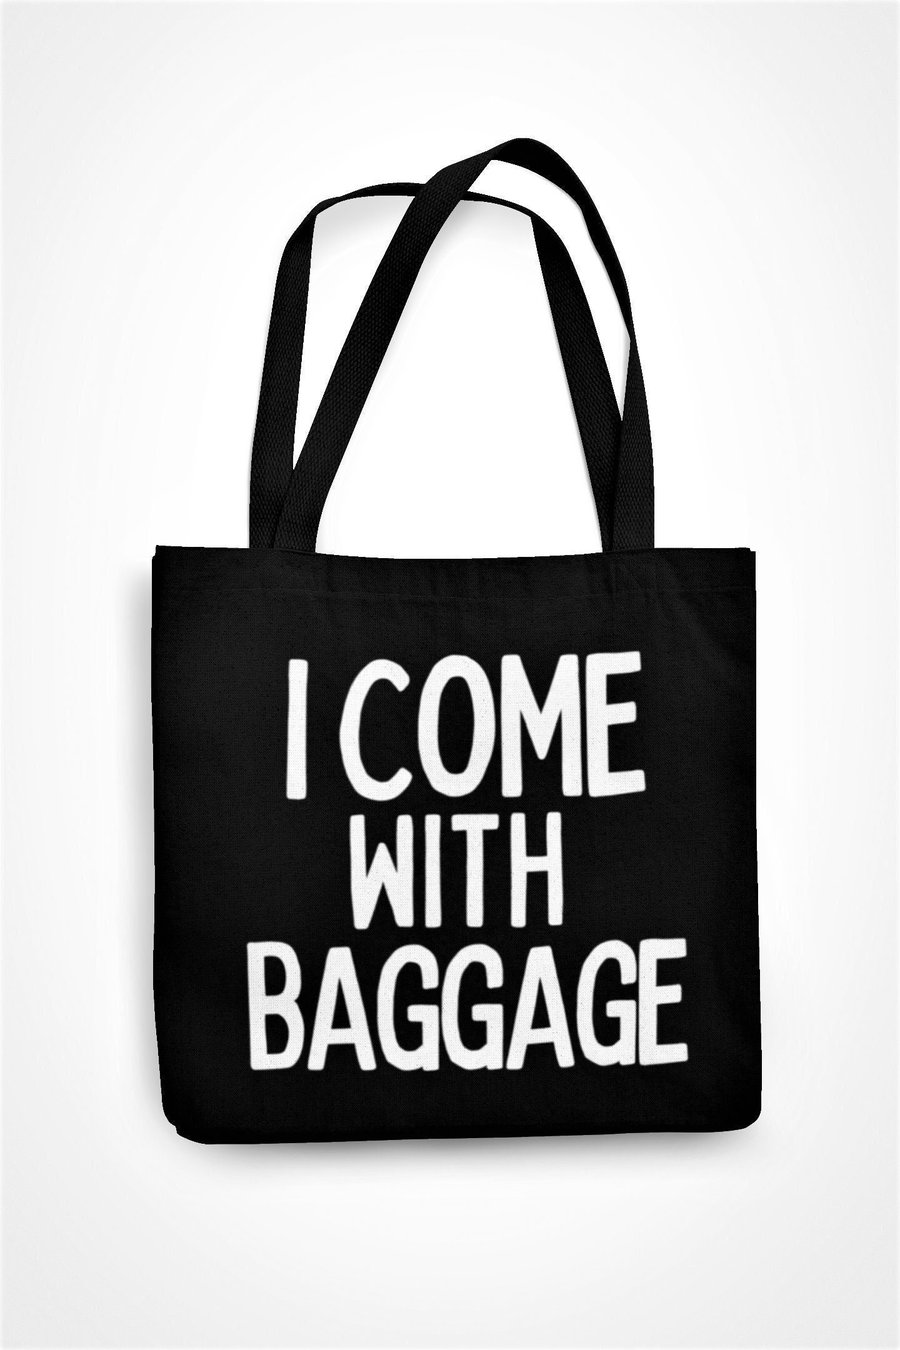 I Come With Baggage Tote Bag Funny Sarcastic Novelty Shopping Bag Joke Christmas